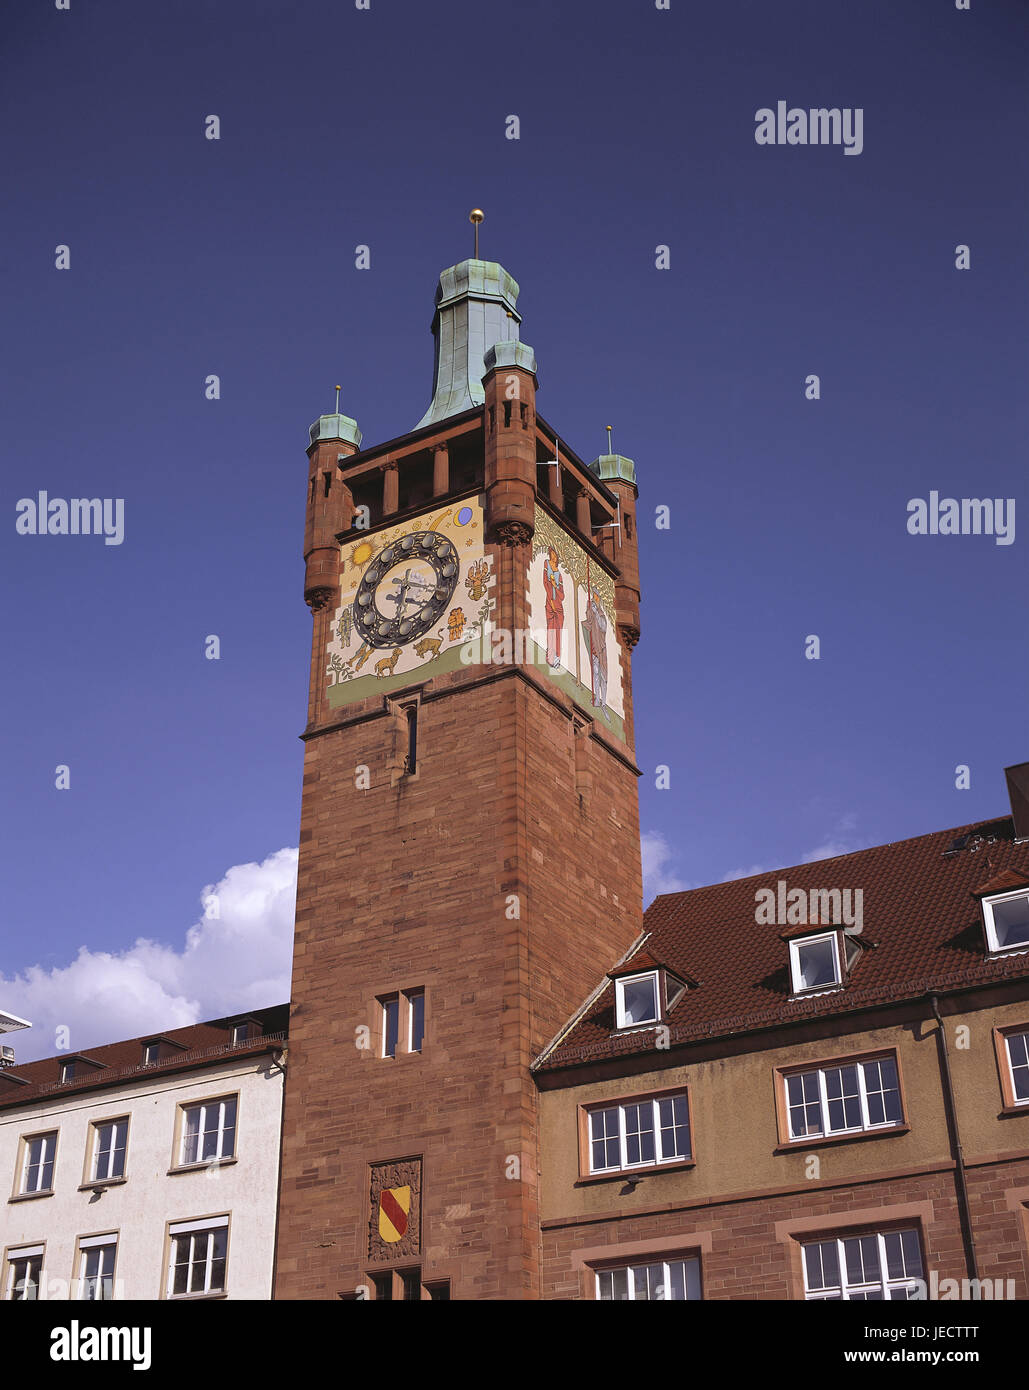 Alemania, Baden-Wurttemberg, Pforzheim, la torre del ayuntamiento, la ciudad, la construcción, el ayuntamiento, la fachada, la torre, reloj, reloj, reloj del ayuntamiento, la torre del reloj, personajes, tiempo, tiempo, exterior, Foto de stock